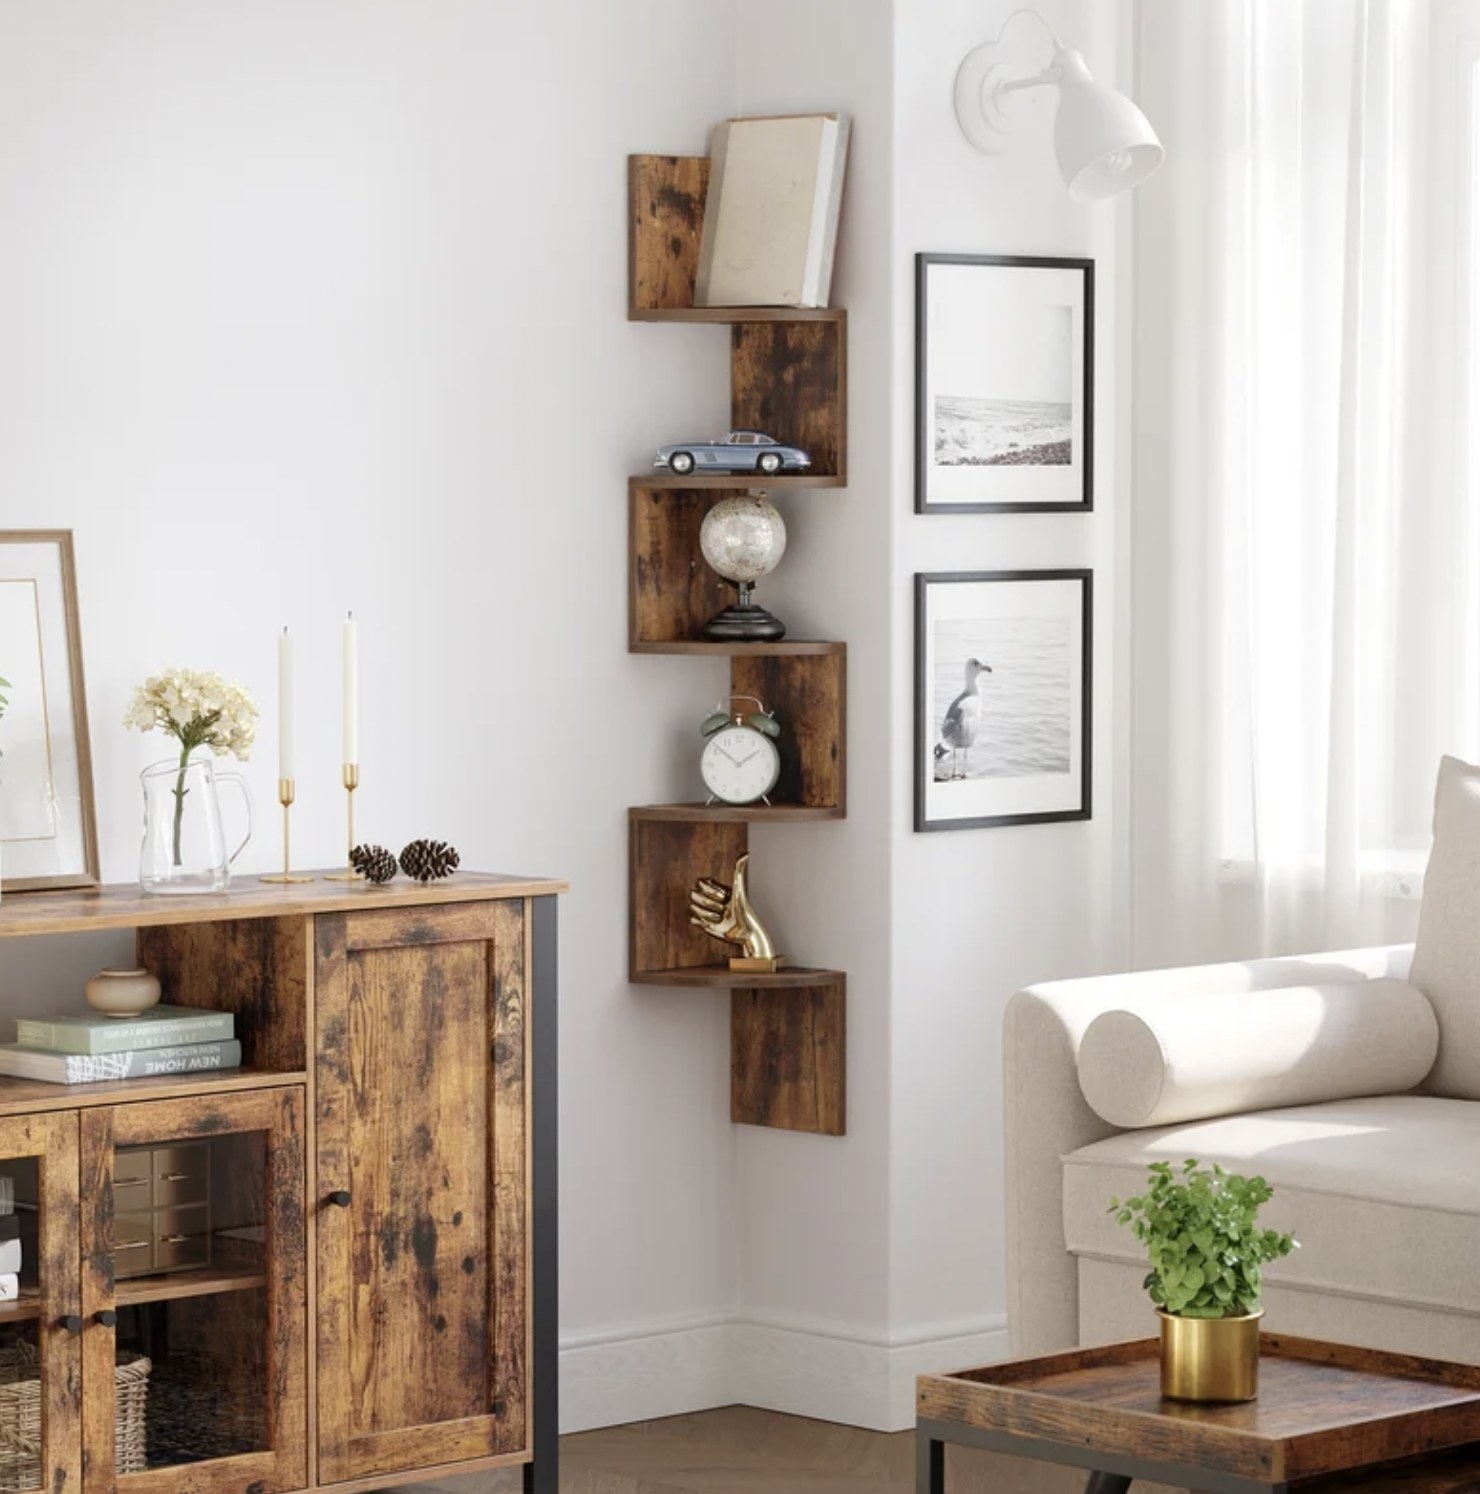 the rustic wooden corner shelf in living room corner with knick knacks on shelves